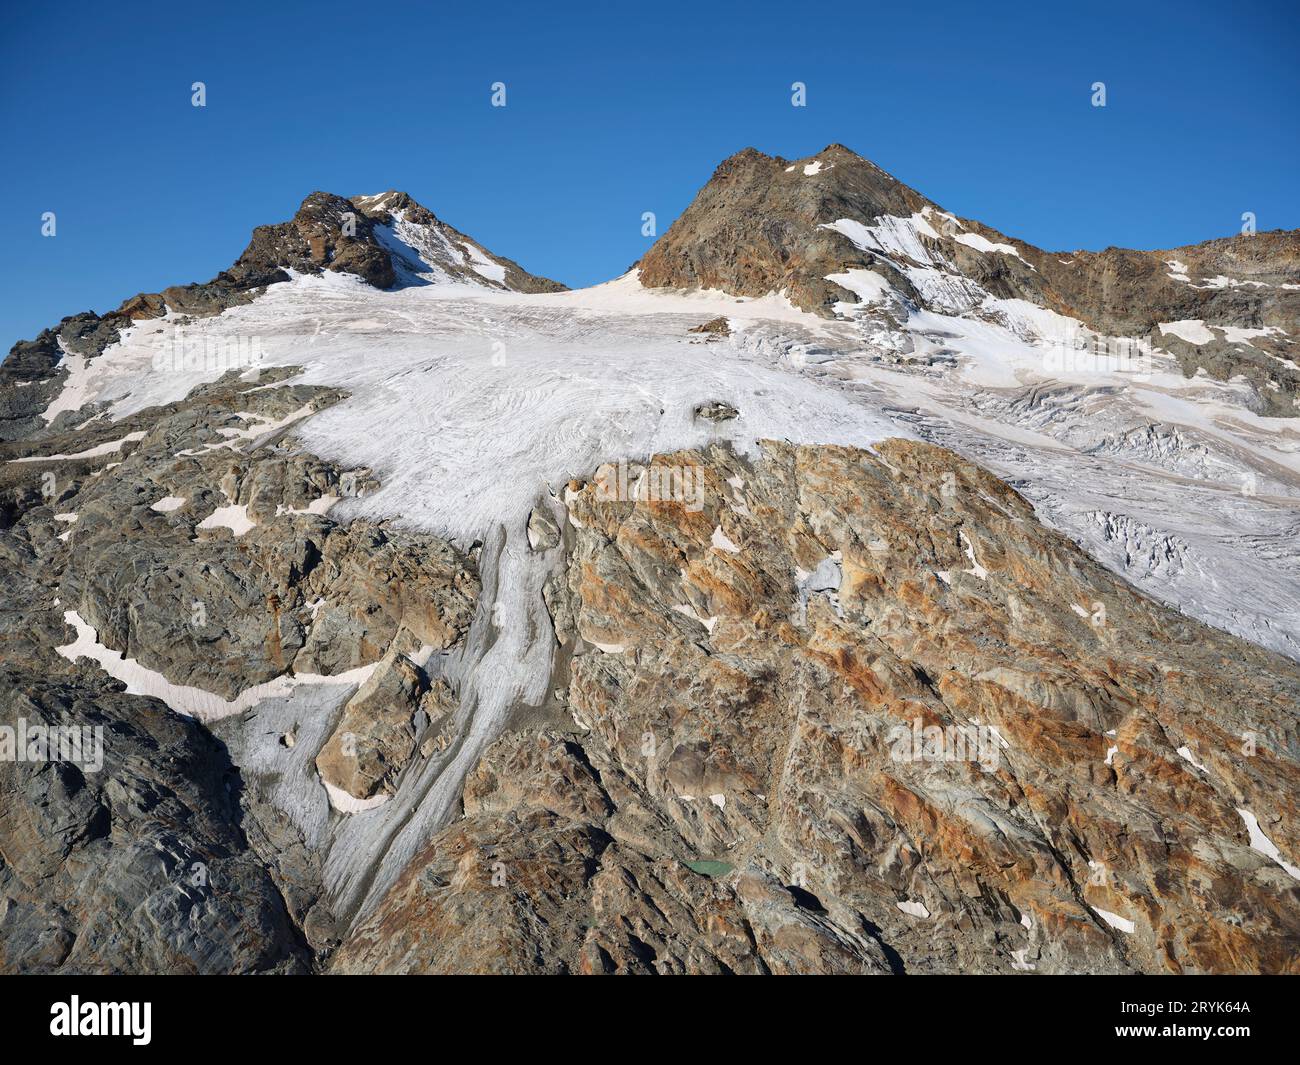 VISTA AEREA. Mount Chateau Blanc e il suo ghiacciaio. La Thuile, Val Grisenche, Valle d'Aosta, Italia. Foto Stock